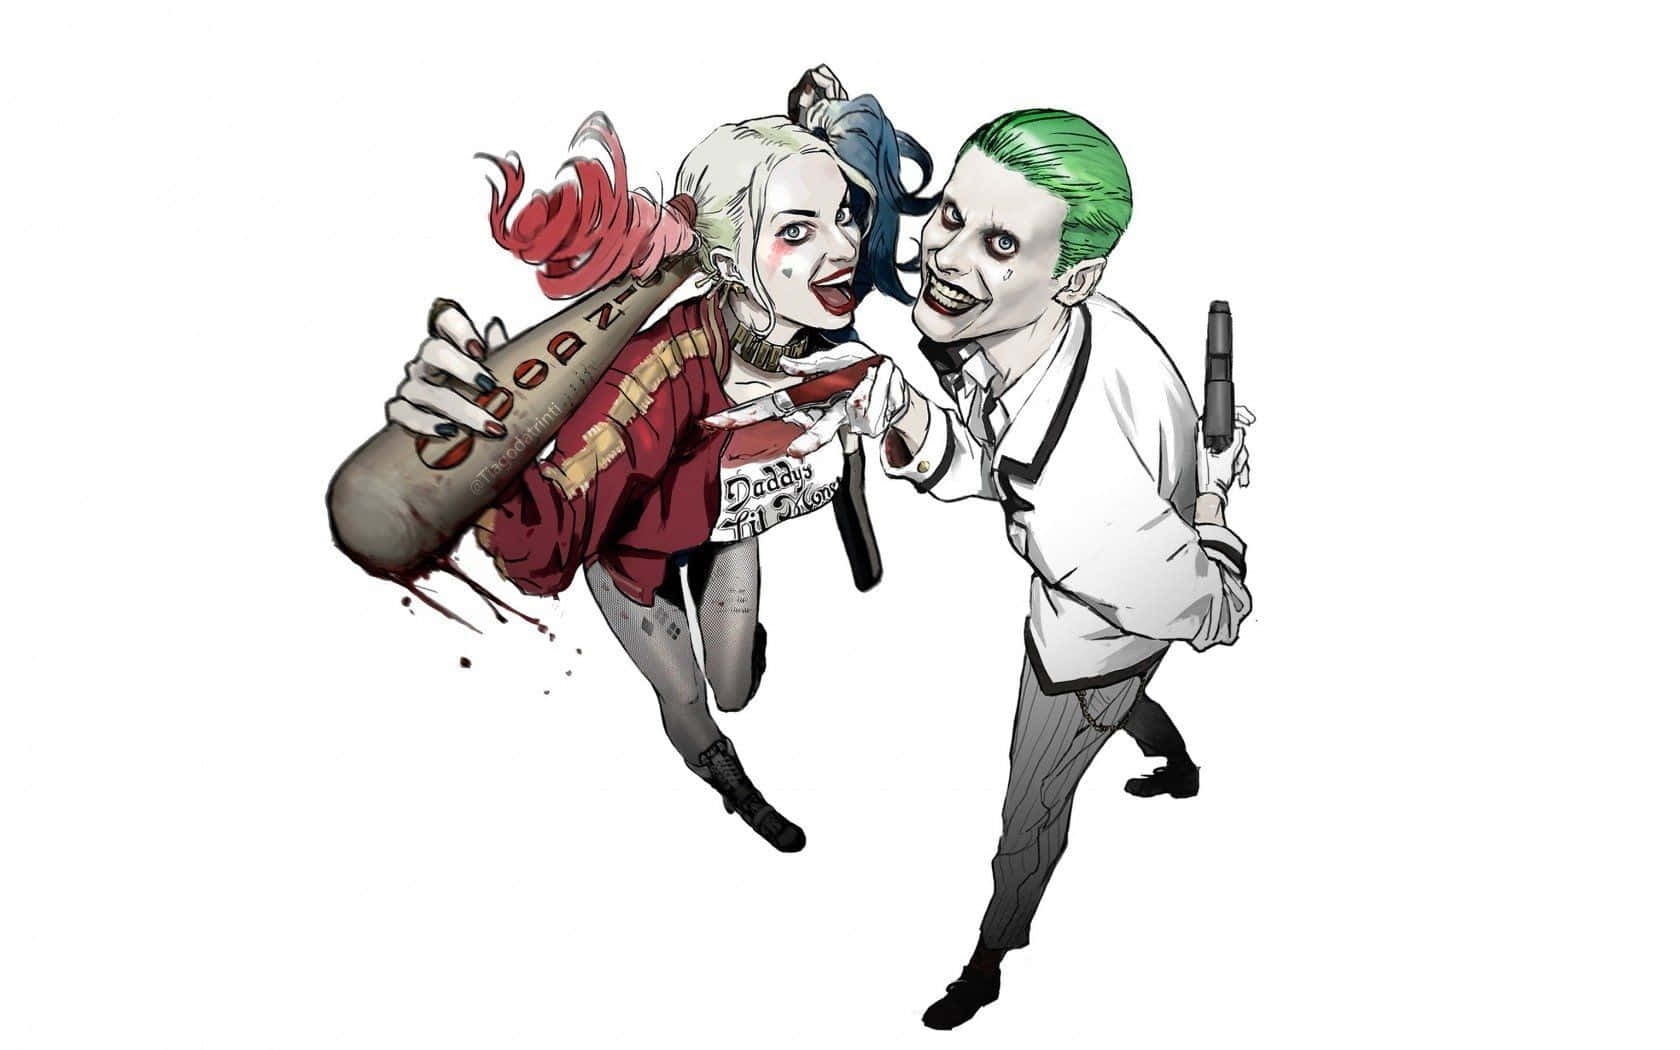 Dieliebesgeschichte Des Jokers Und Harley Quinn. Wallpaper